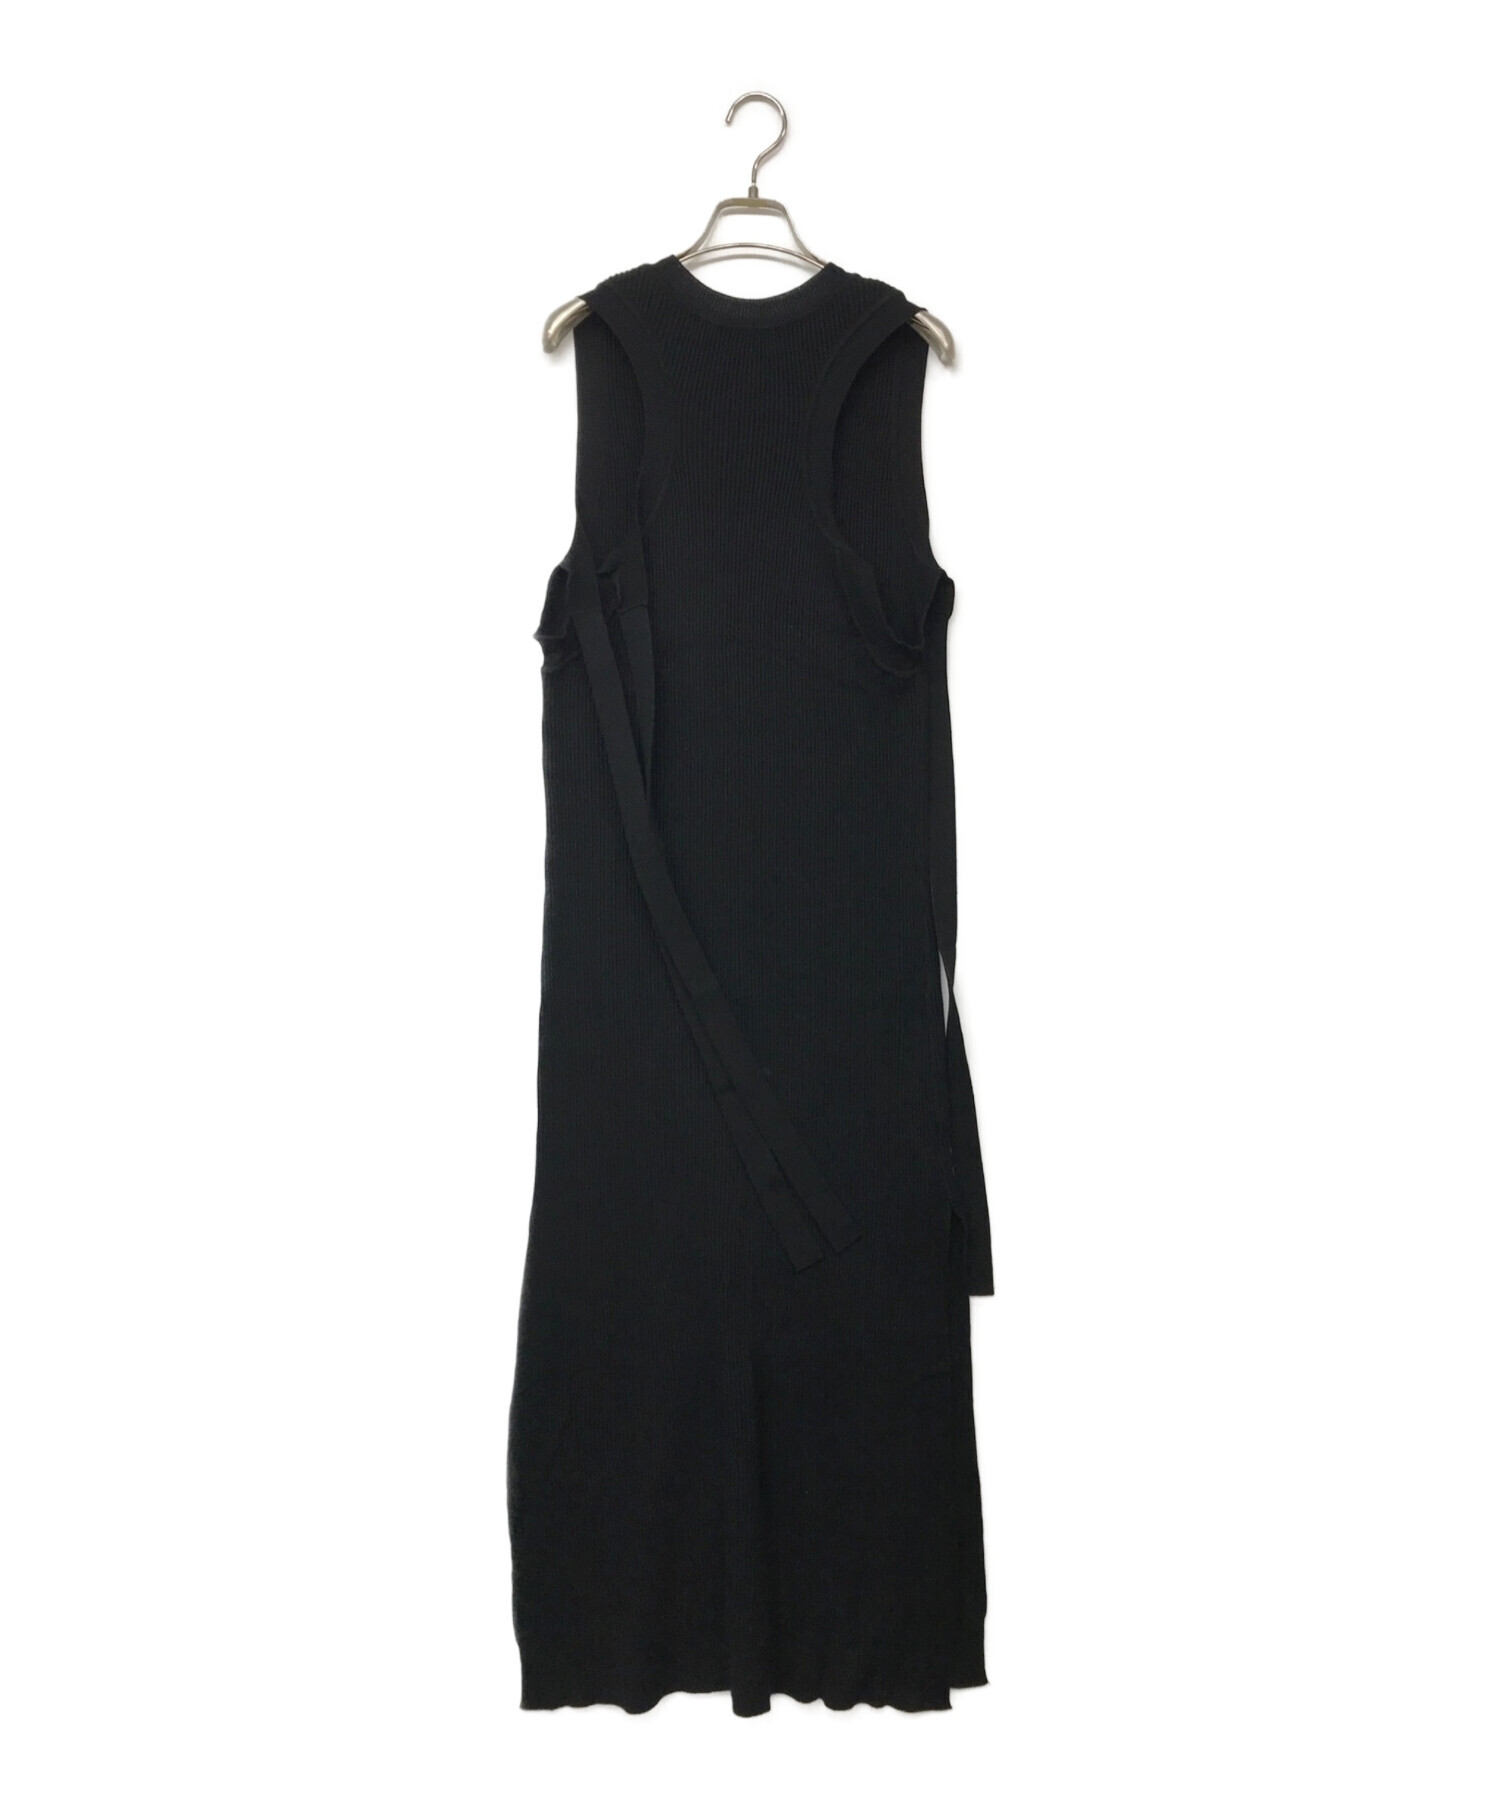 Marni dress size42